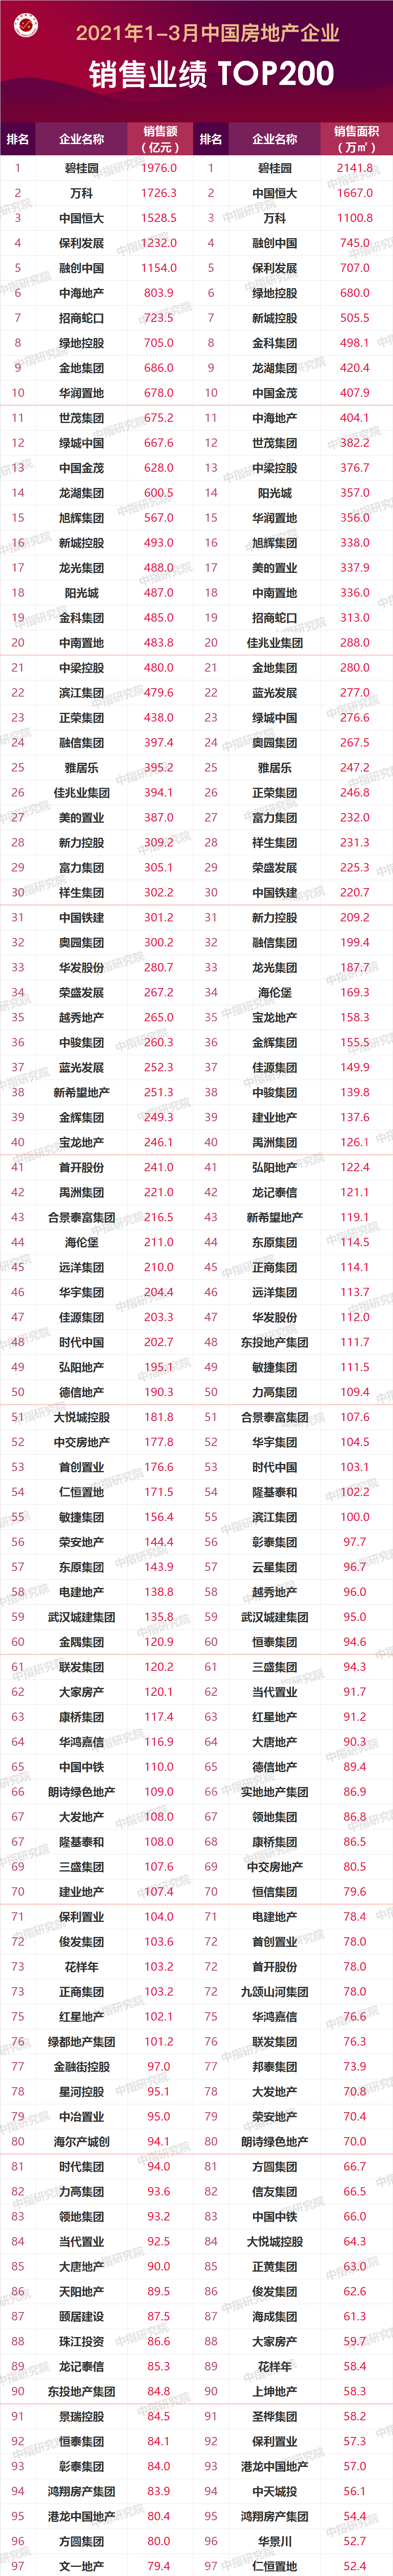 3月湛江楼市报告：住宅均价10762元/㎡ 环比跌0.03%